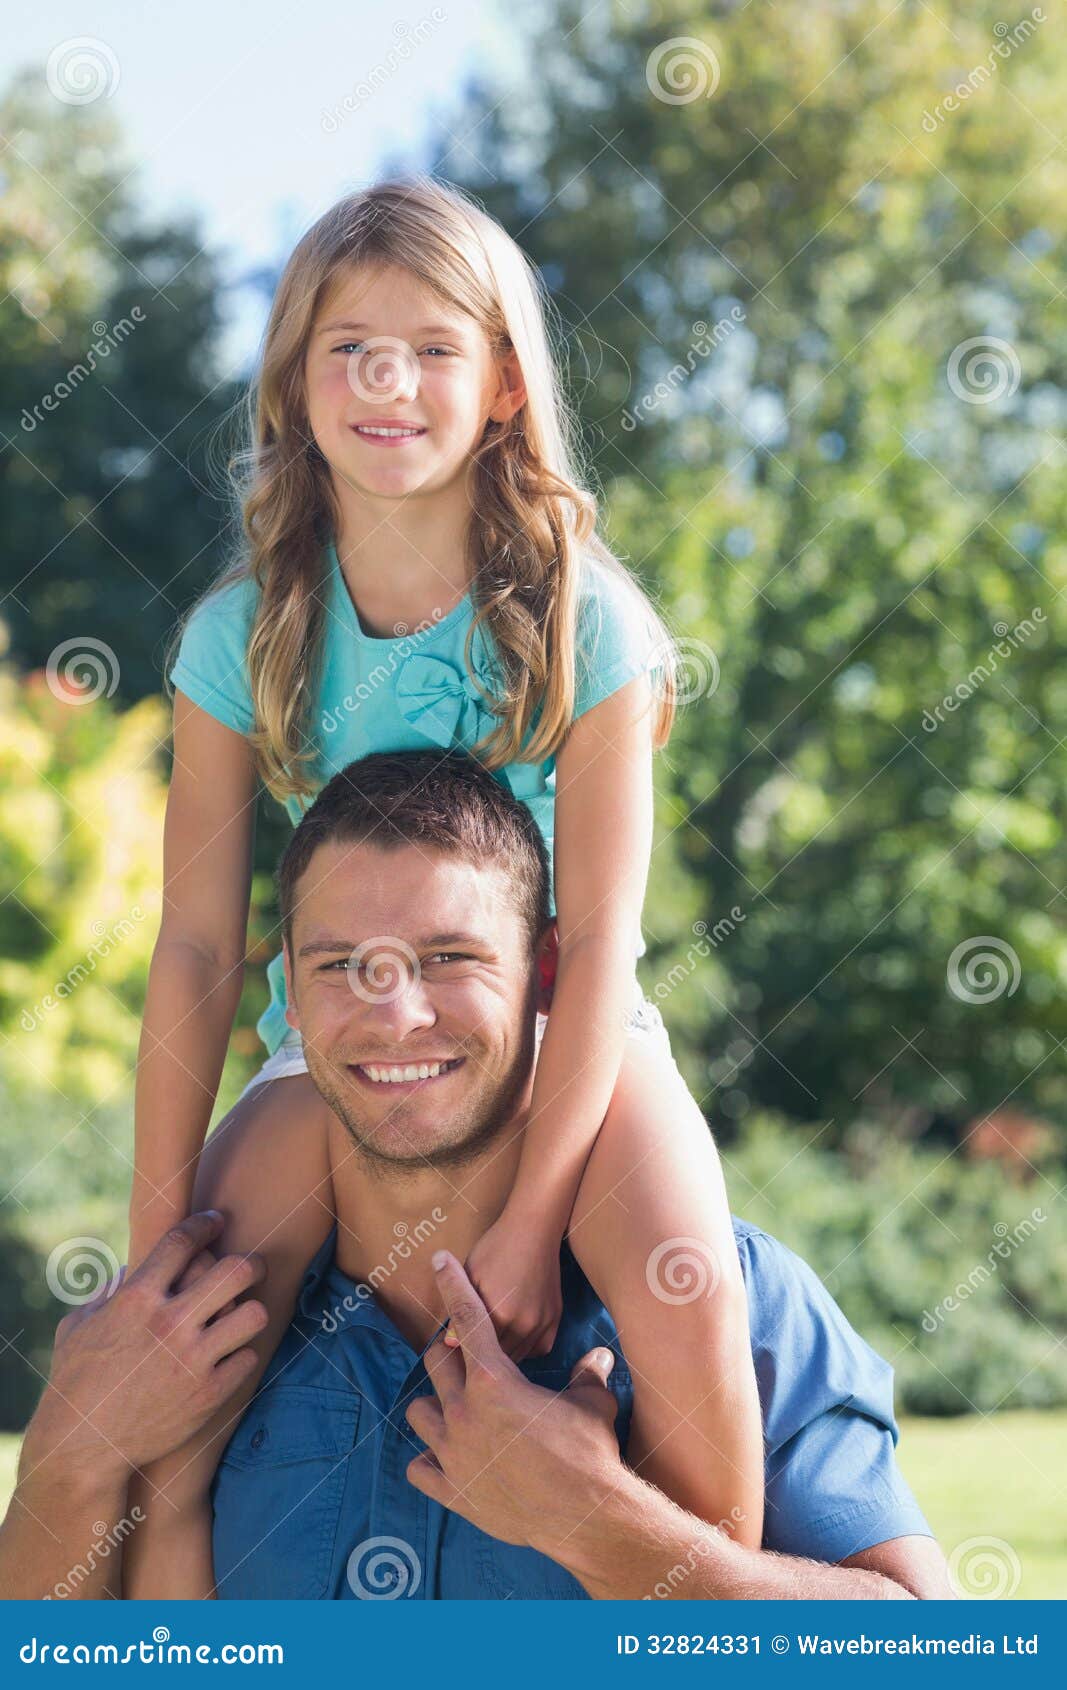 Teen daughter daddy. Дочь на плечах у отца. Девочка на руках отца. Девочка сидит на плечах. Девочка на плечах у папы.